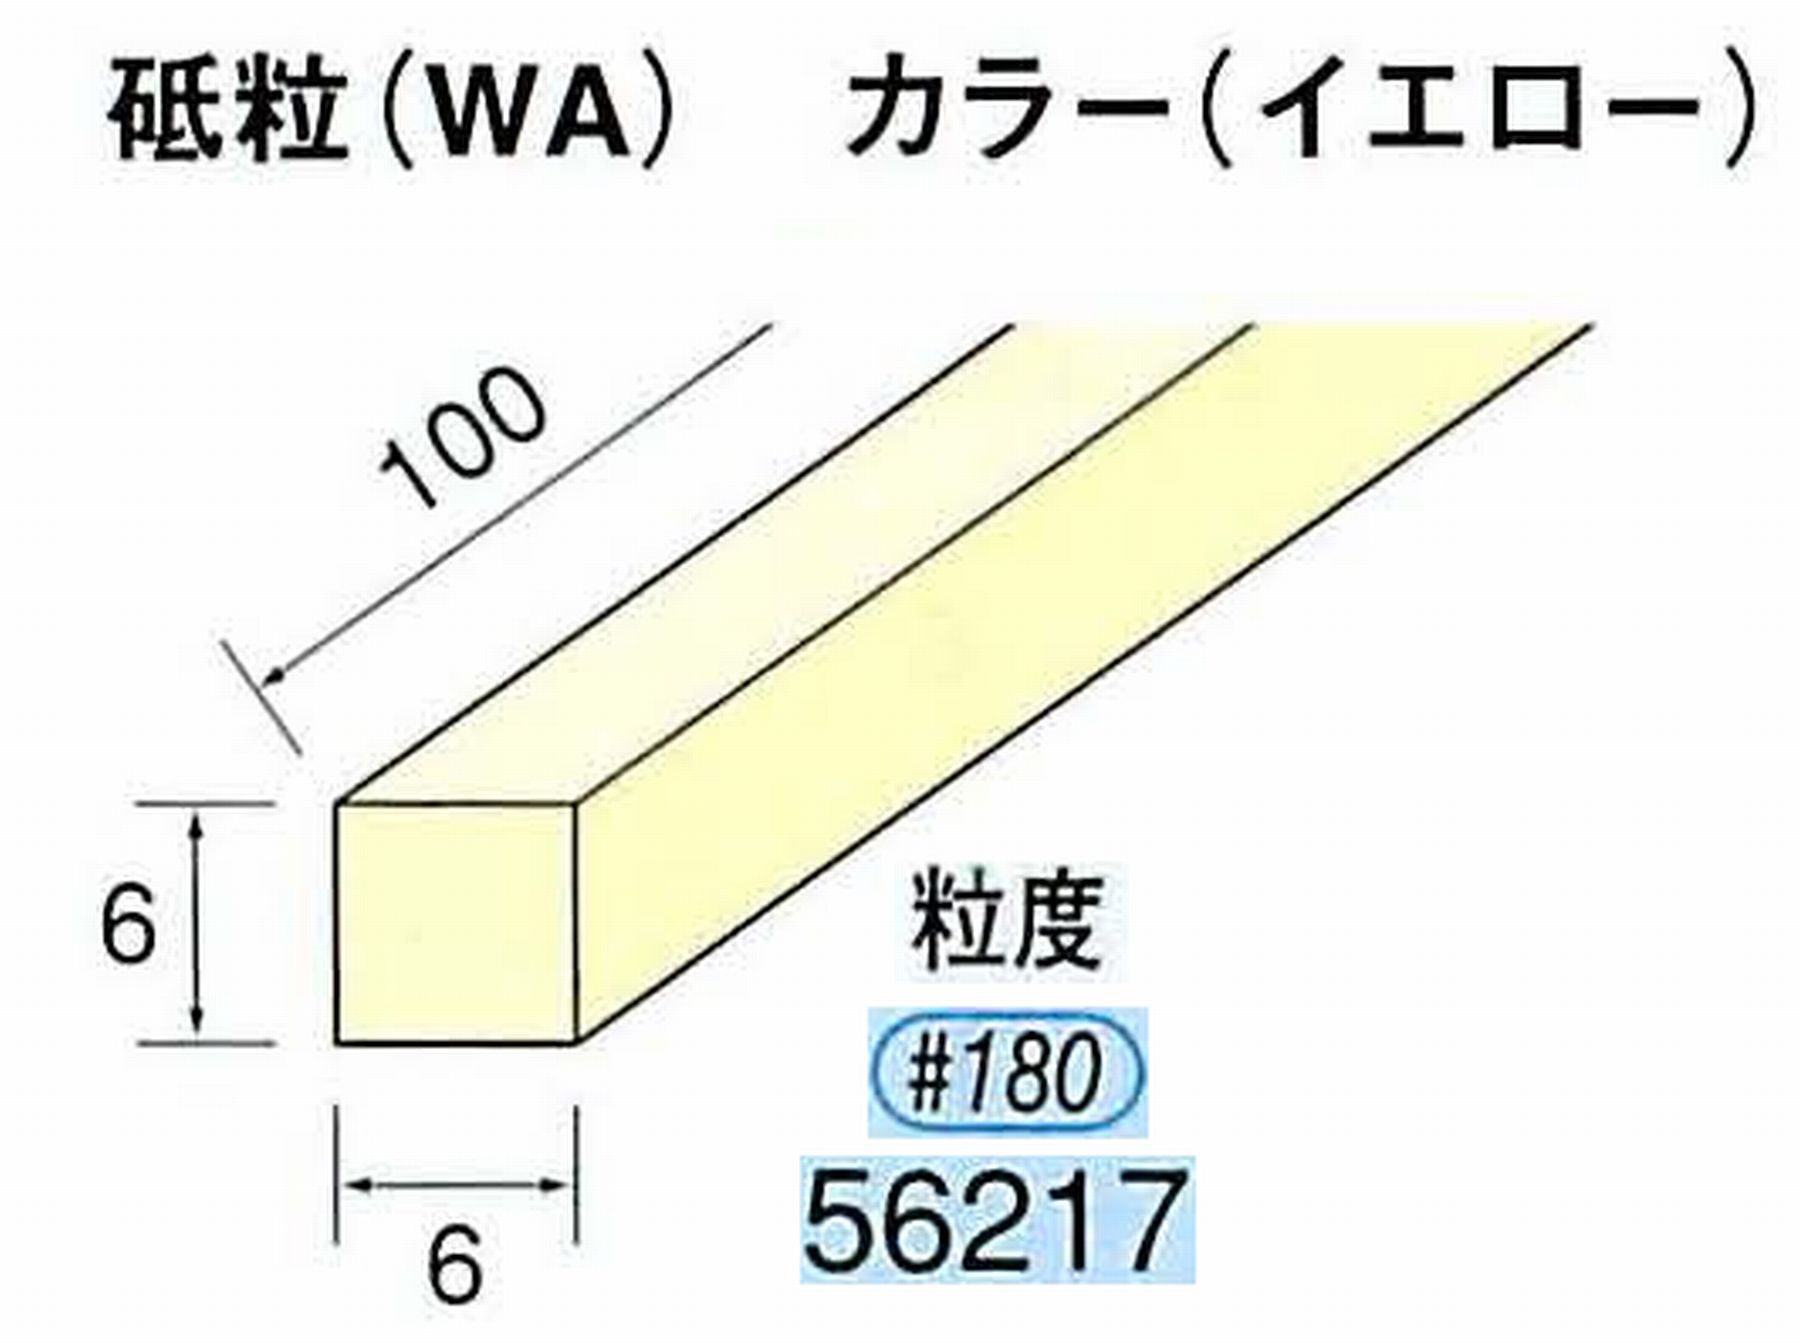 ナカニシ/NAKANISHI スティック砥石 イエロー・フィニッシュシリーズ 砥粒(WA) 56217